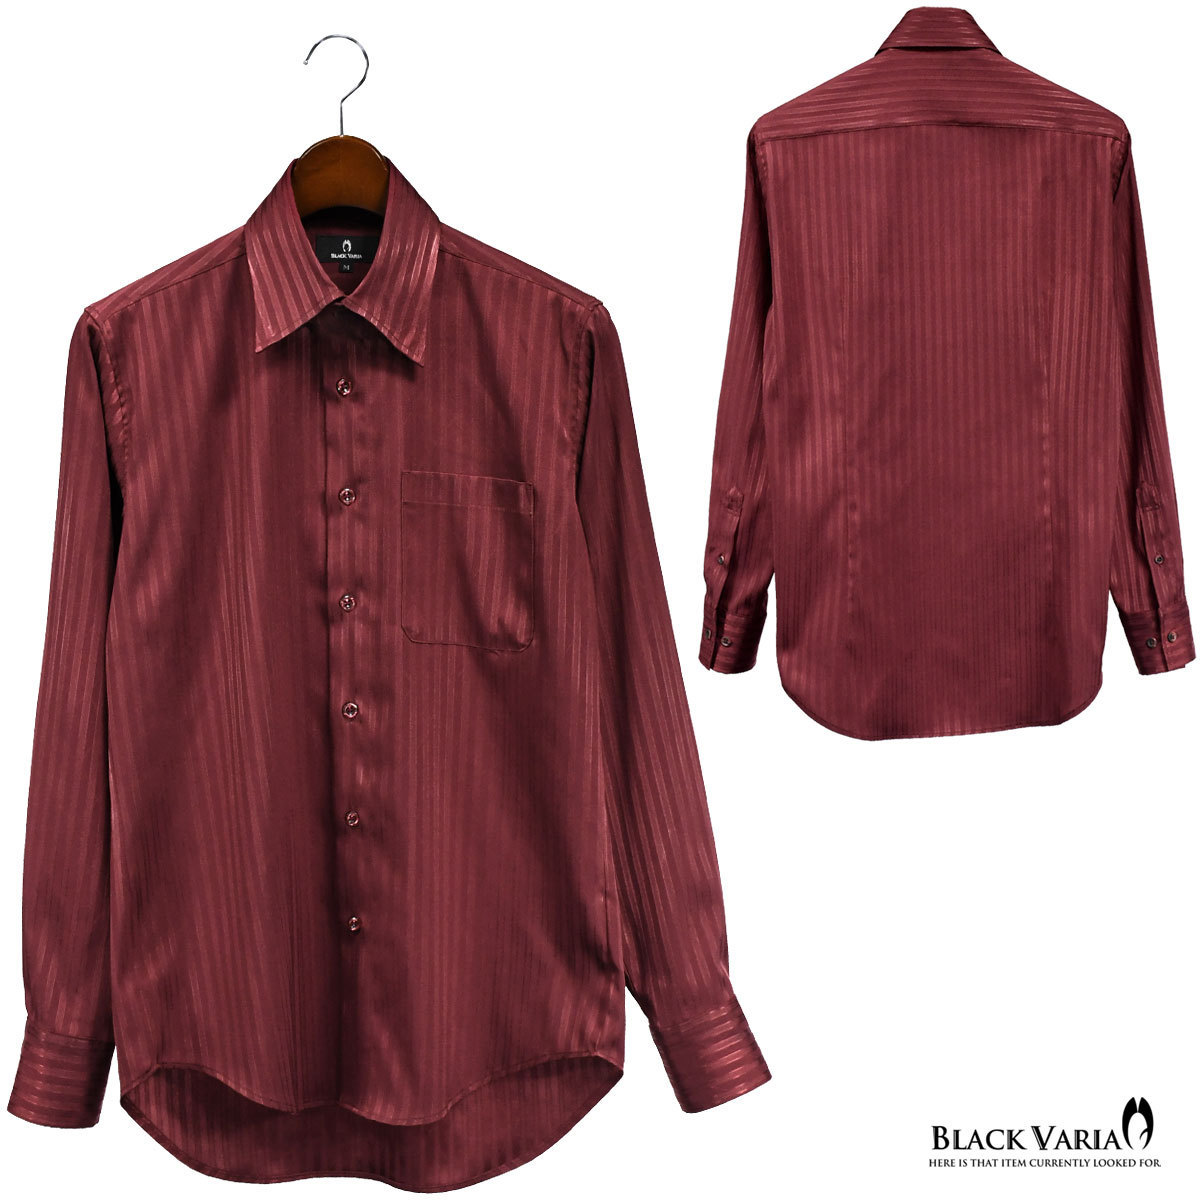 a191850-win BLACK VARIA ドゥエボットーニ ストライプ柄 ジャガード織柄[レギュラーカラー]サテンシャツ メンズ(ワインレッド赤) L_画像6